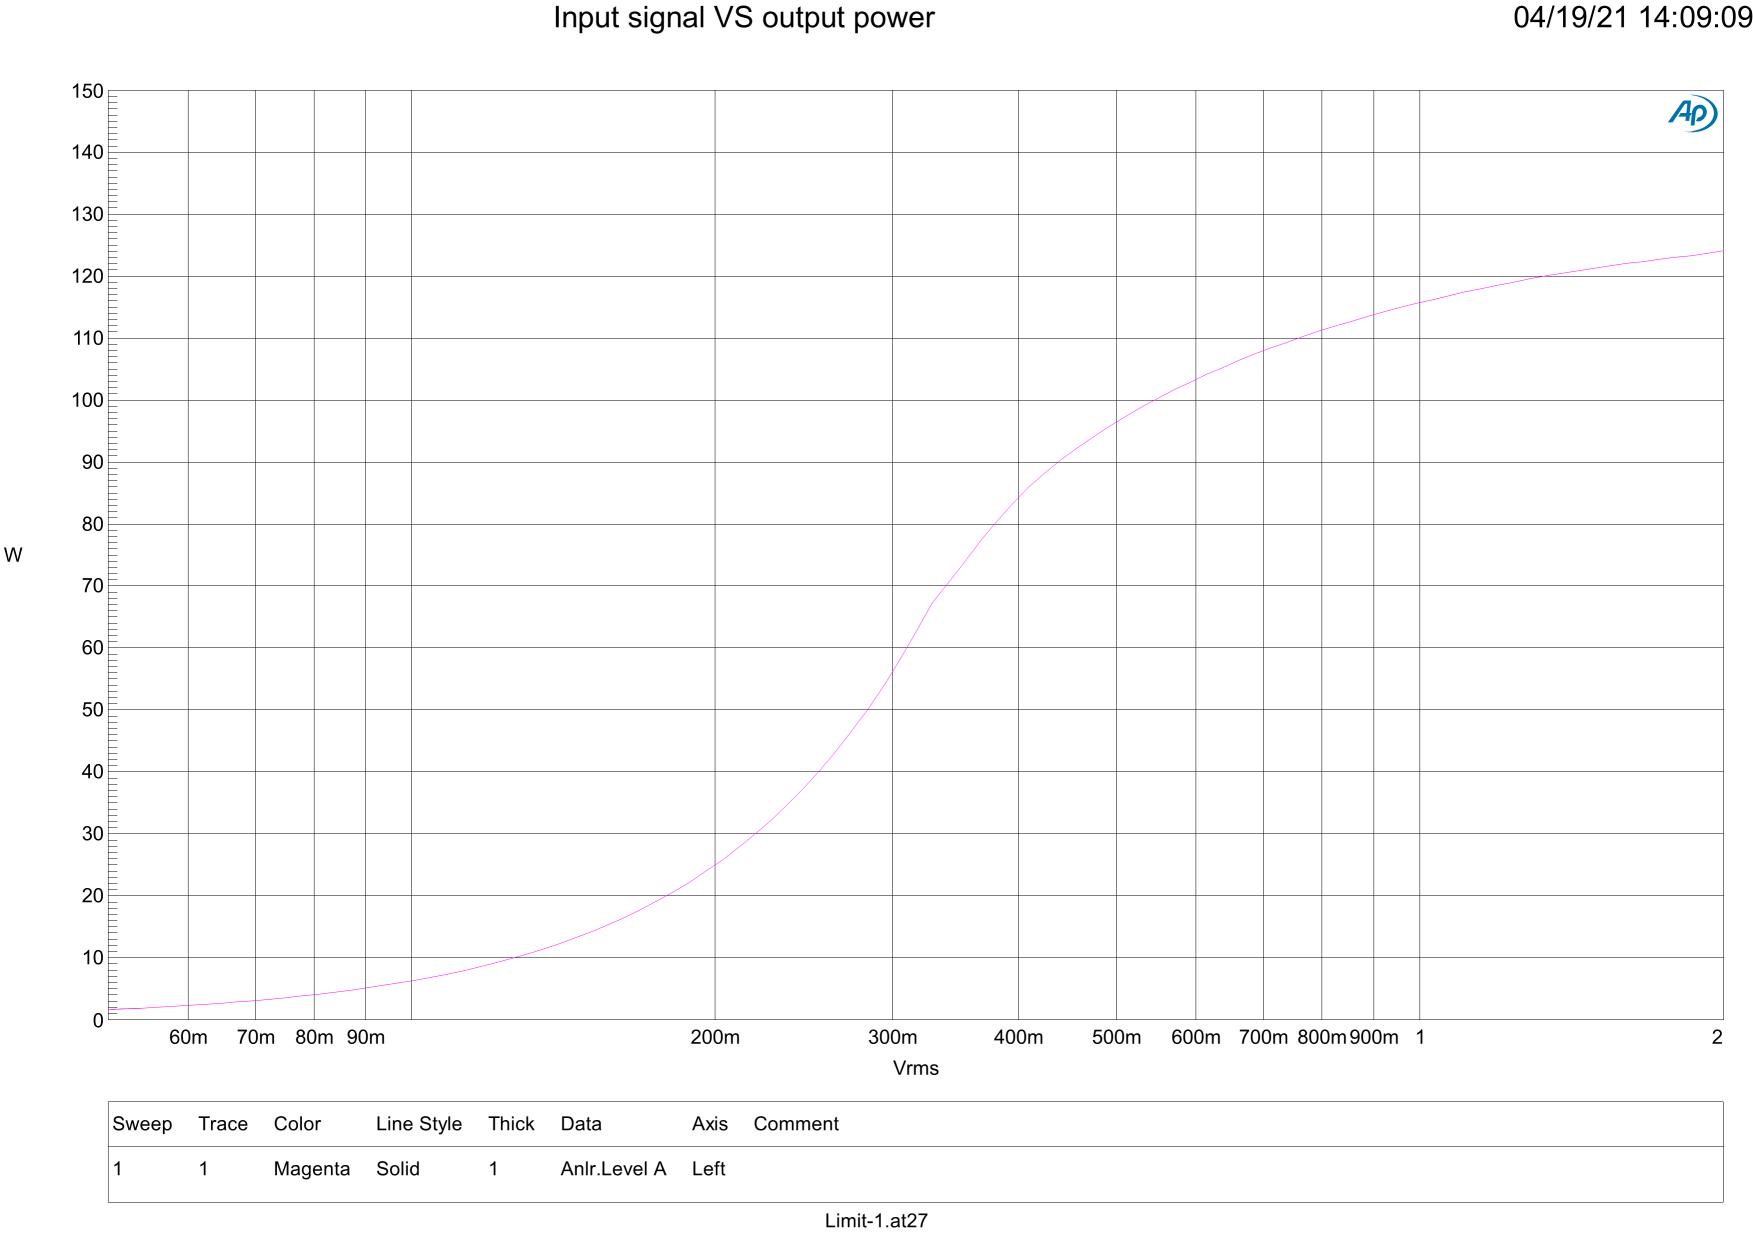 Input Singnal VS Output Power